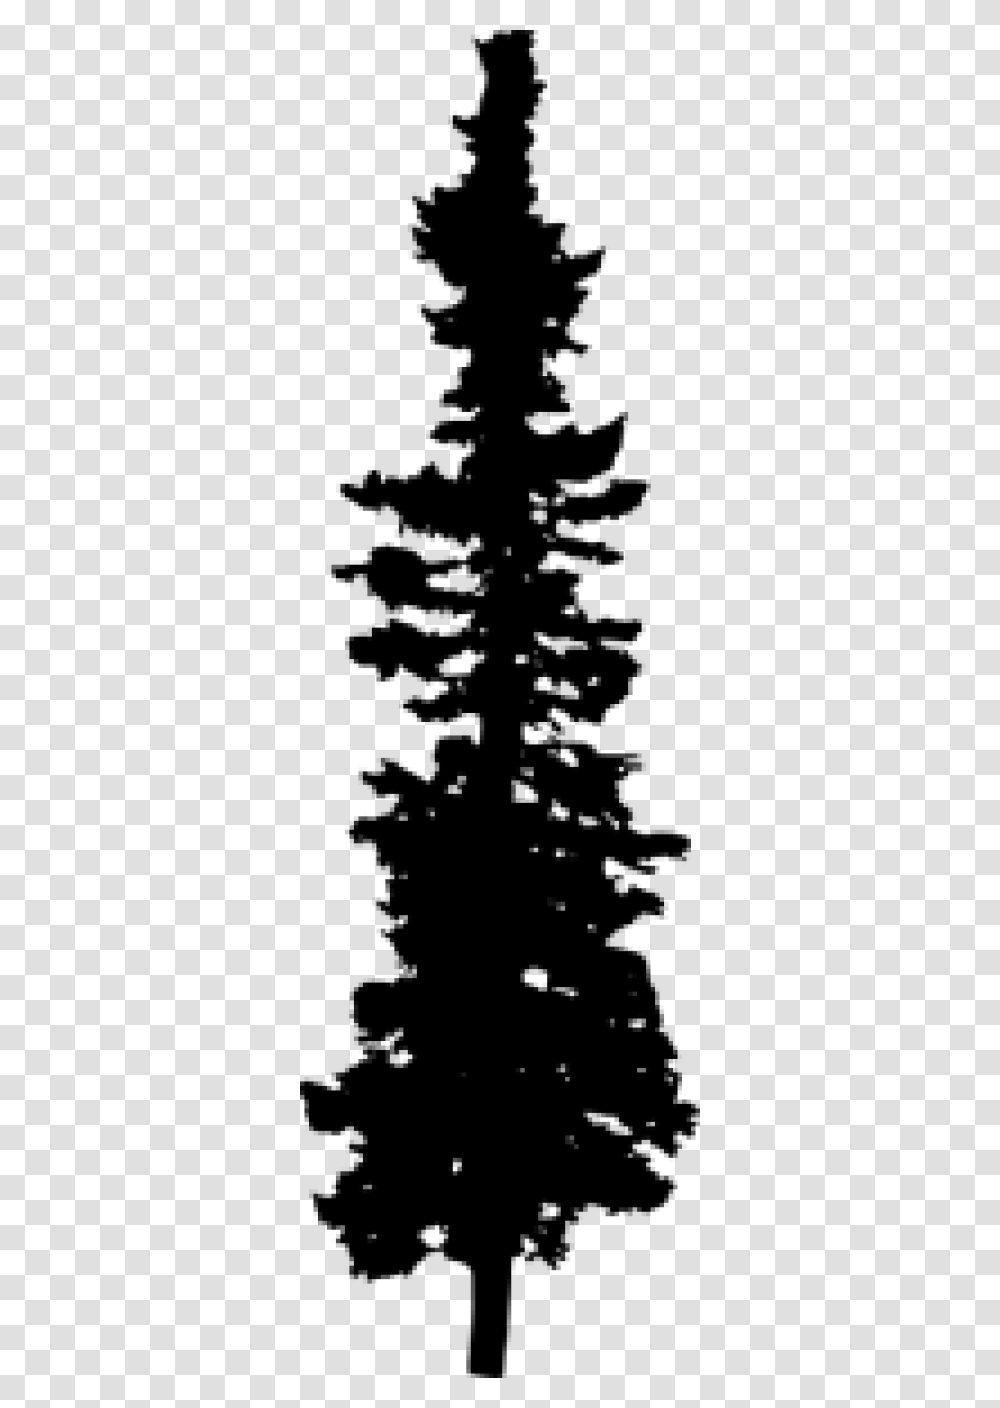 Pine Tree Silhouette Pine Tree Silhouette, Gray, World Of Warcraft Transparent Png